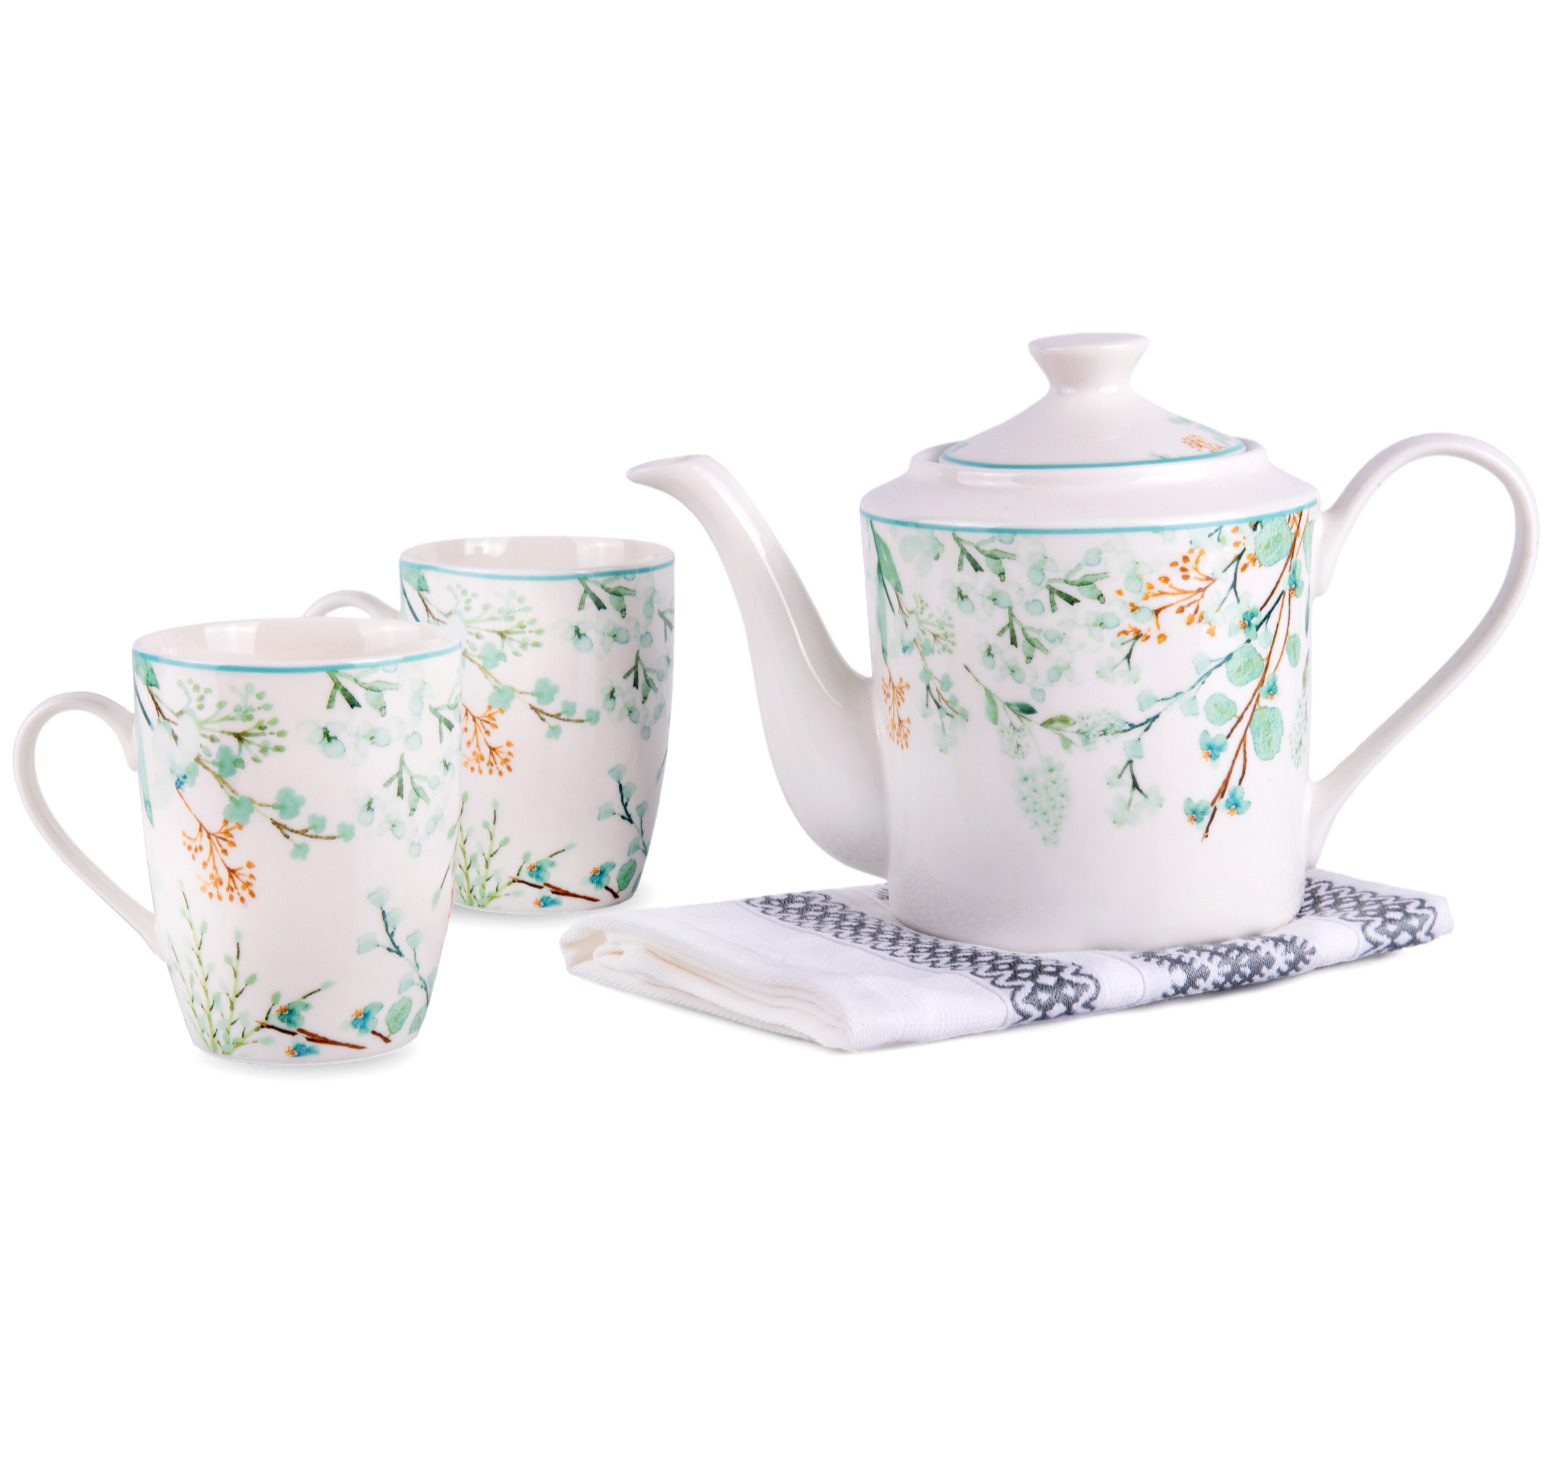 Botanical Garden Porcelain Teapot & Teacup Set. Bone China Tea Set for 2.